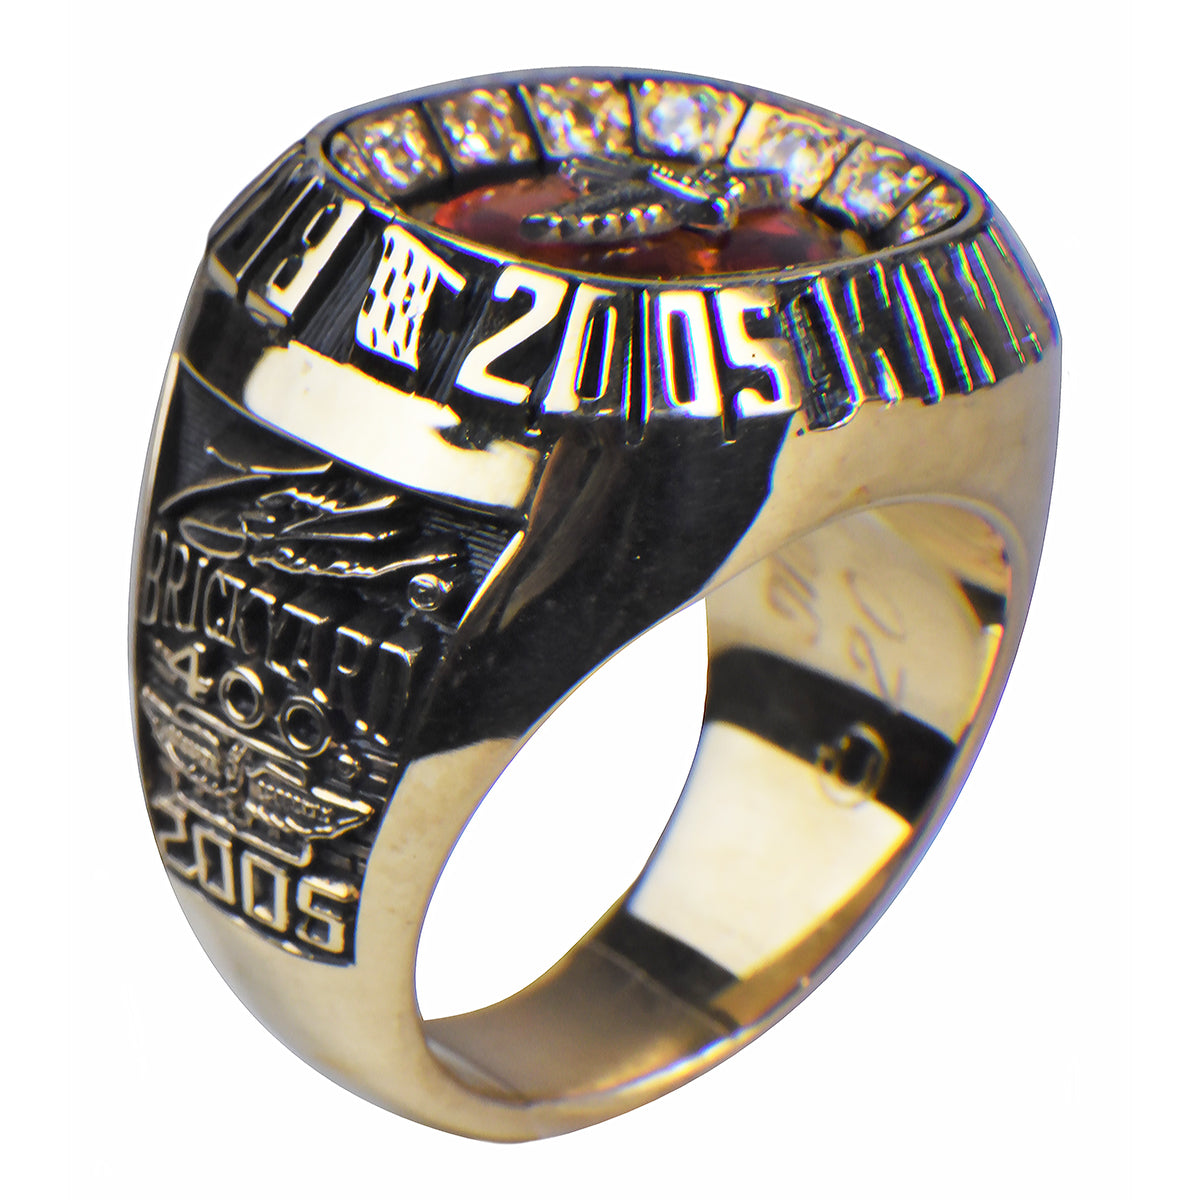 2005 Tony Stewart Brickyard 400 Winning Crew Members Ring